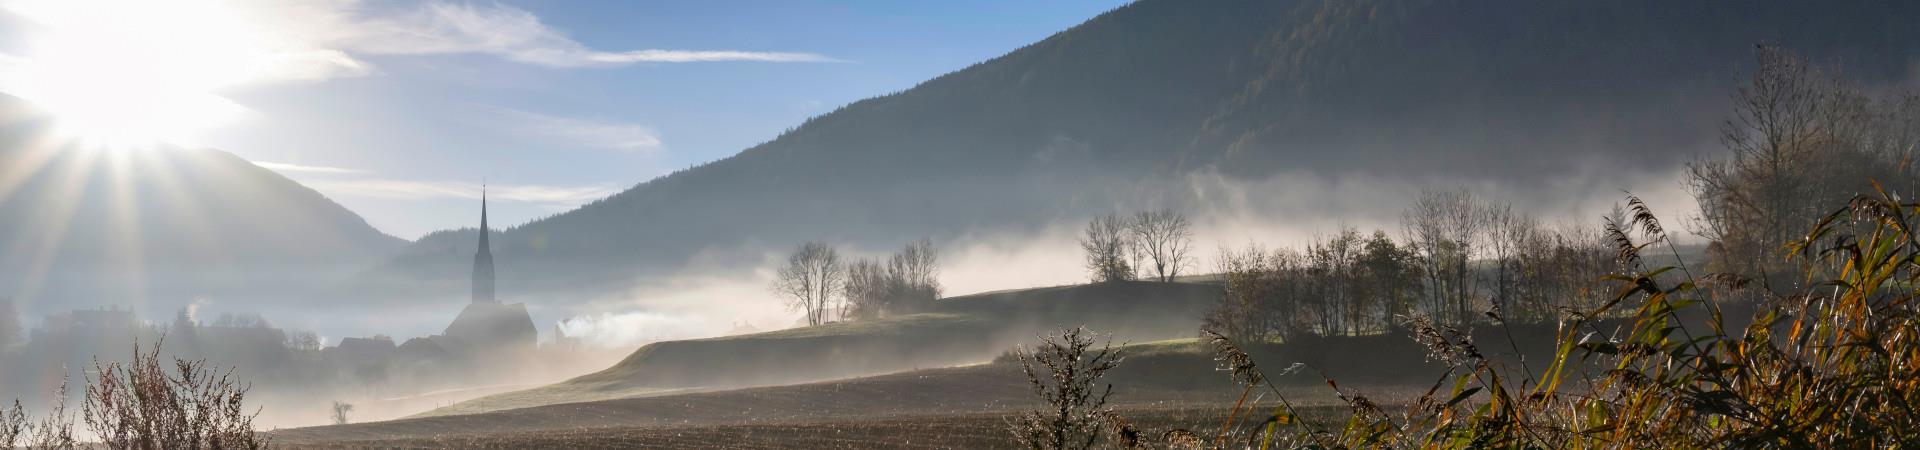 Blick+von+weiten+auf+Dorf+im+Nebel